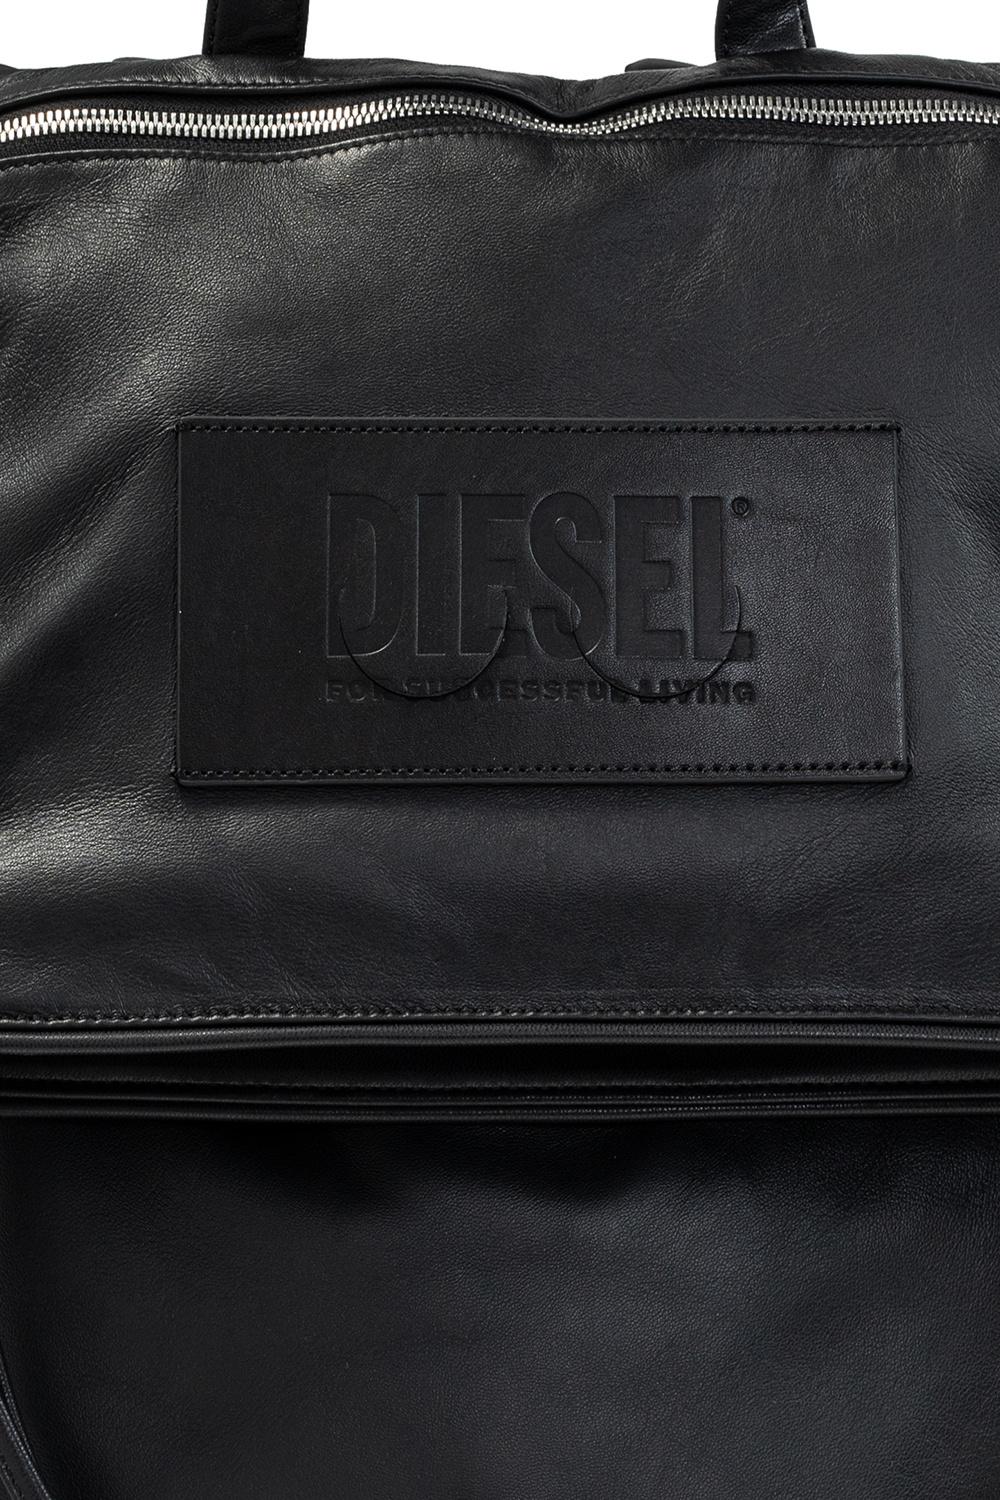 DIESEL 'juliet' Backpack in Black | Lyst